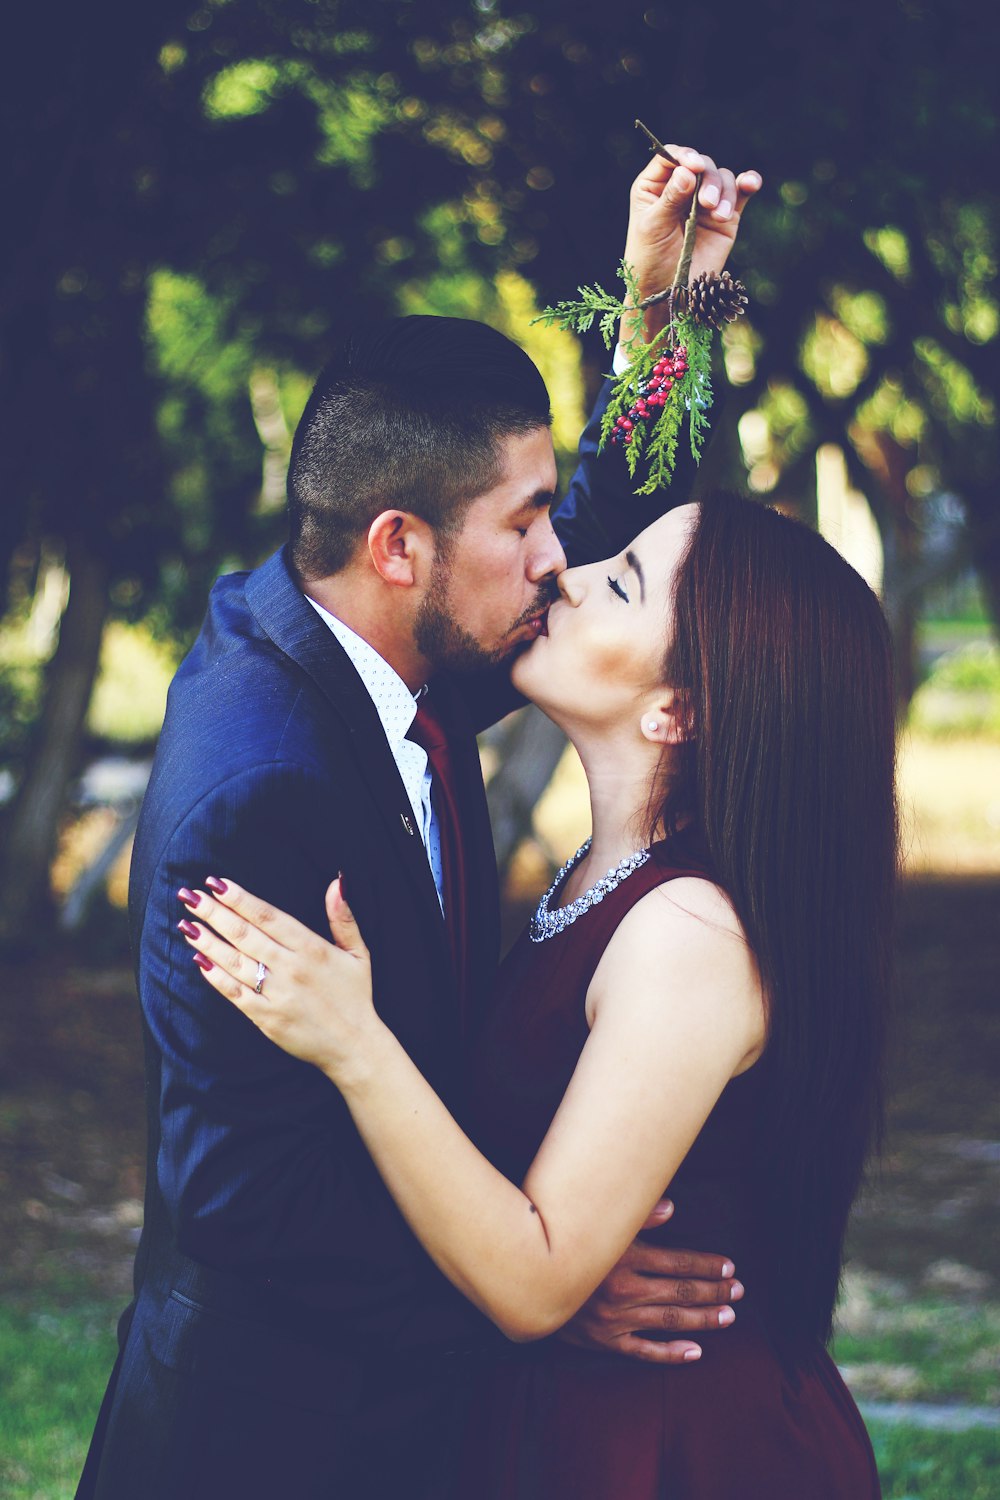 나무 근처에서 키스하는 남자와 여자